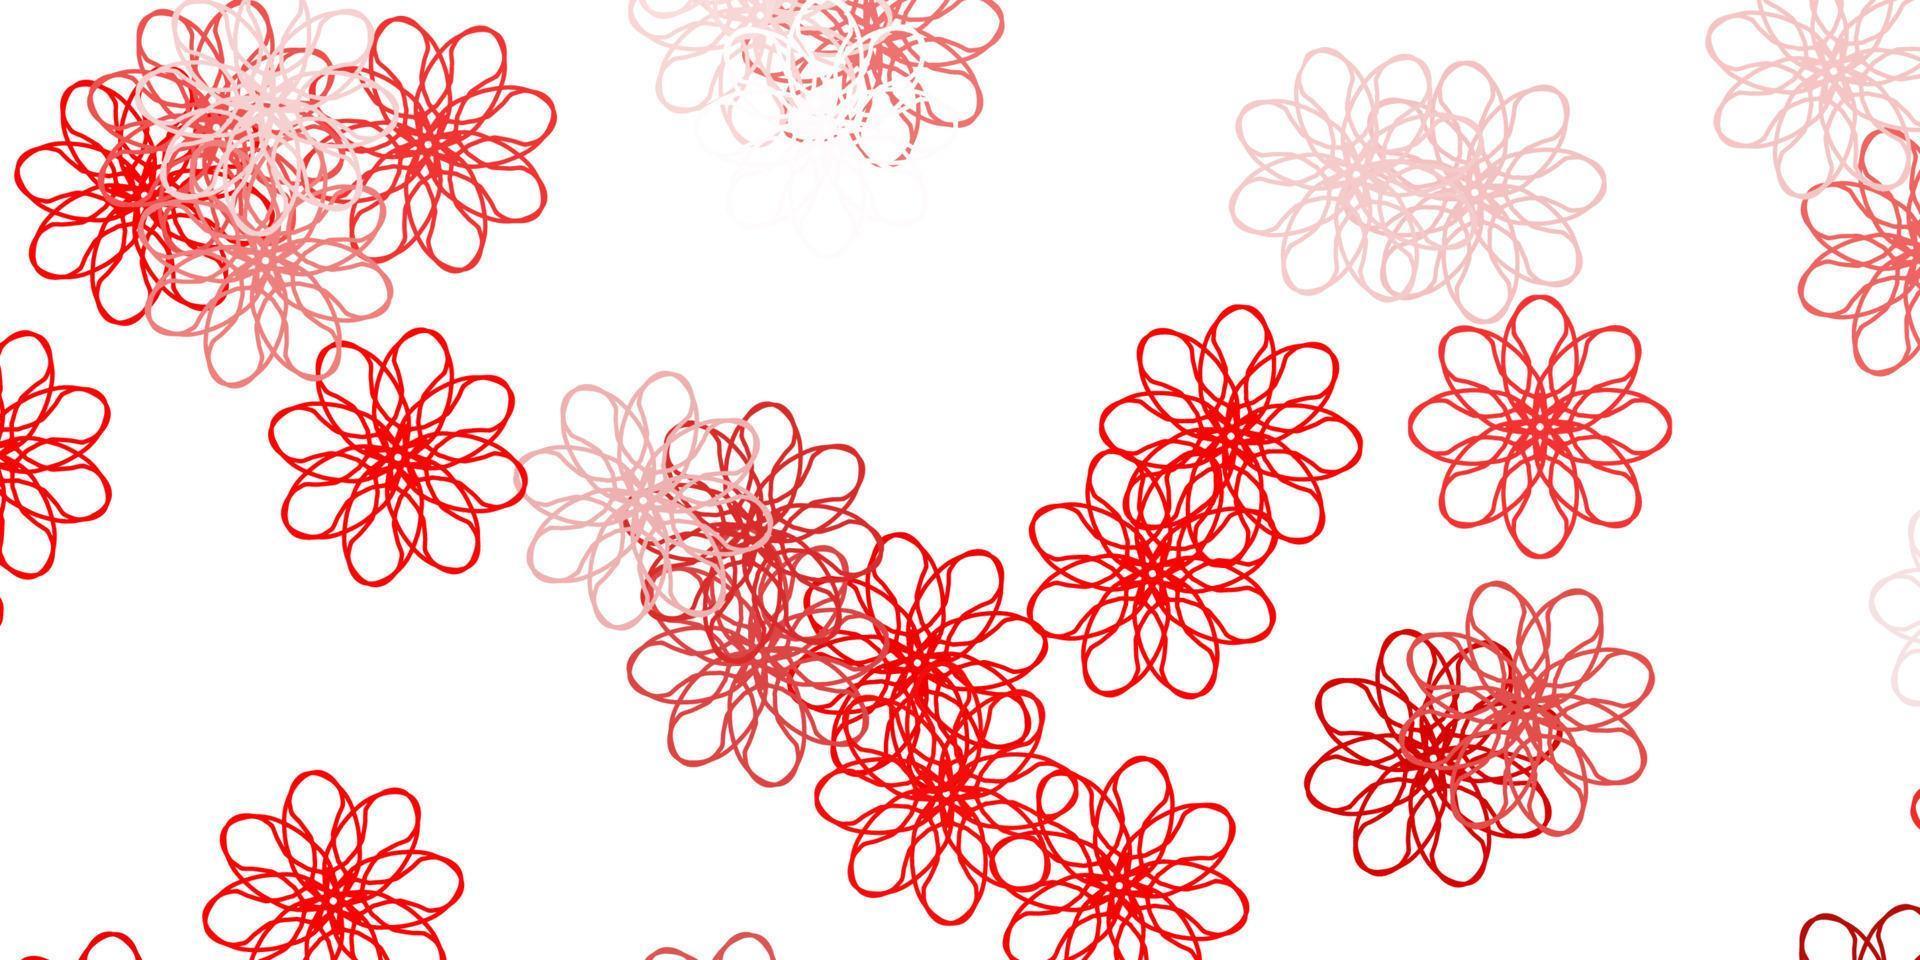 layout natural do vetor vermelho claro com flores.